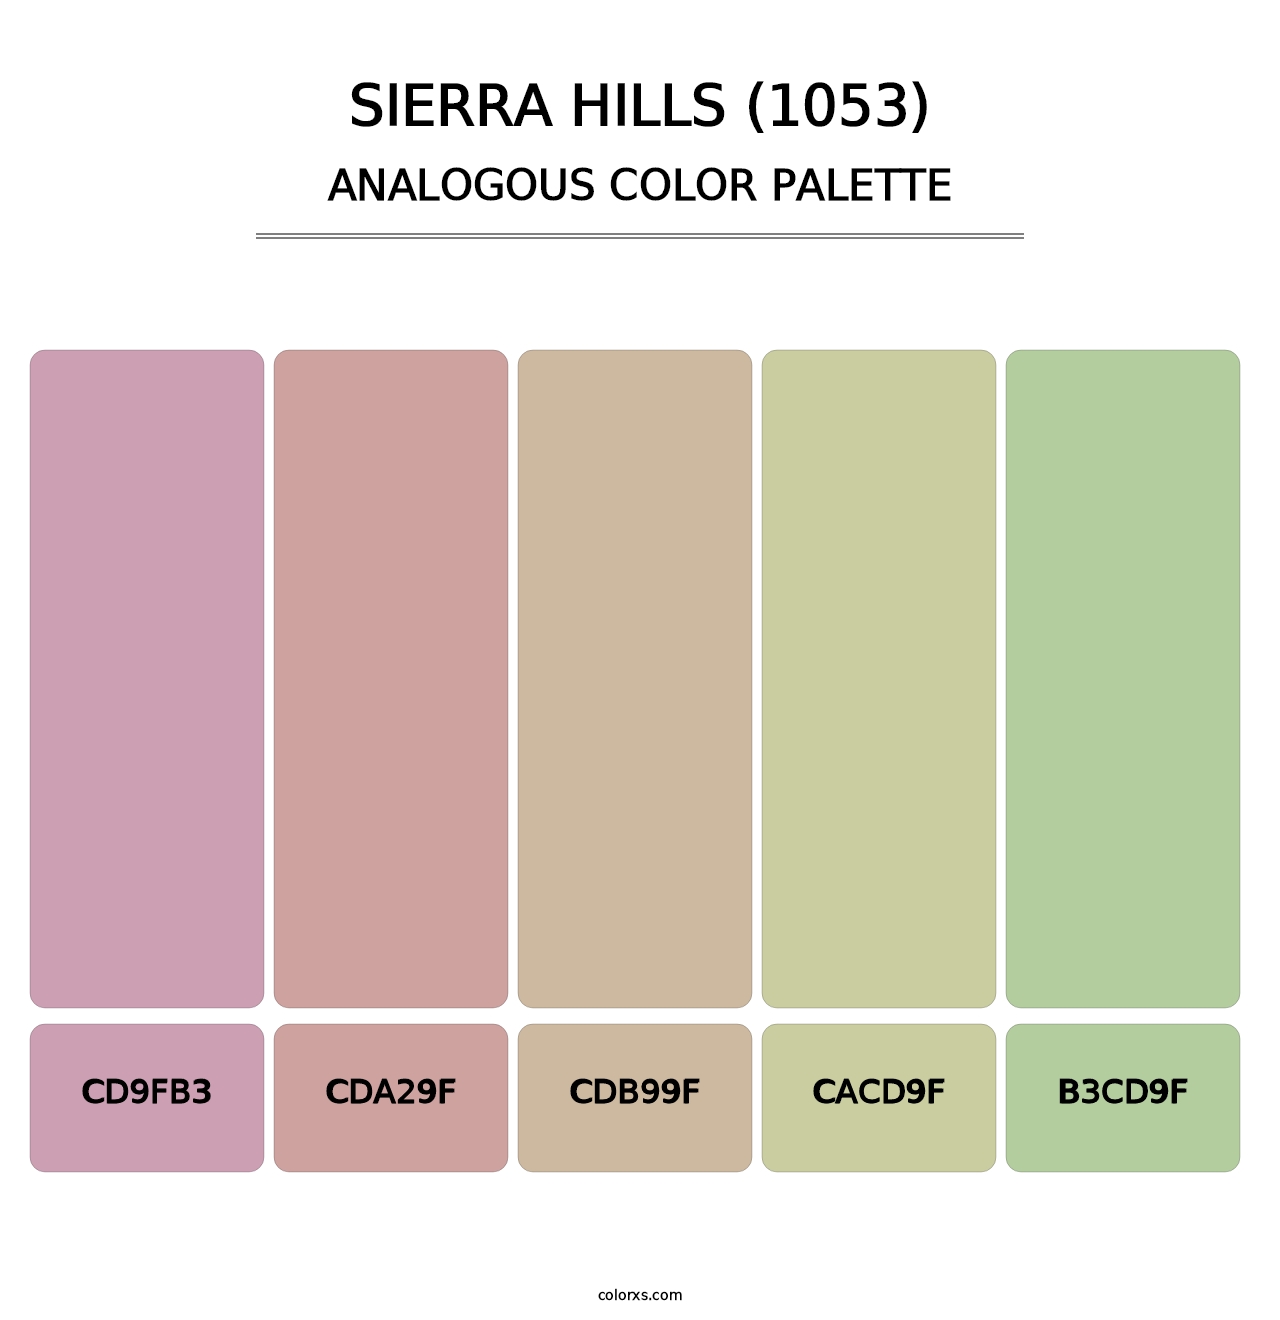 Sierra Hills (1053) - Analogous Color Palette